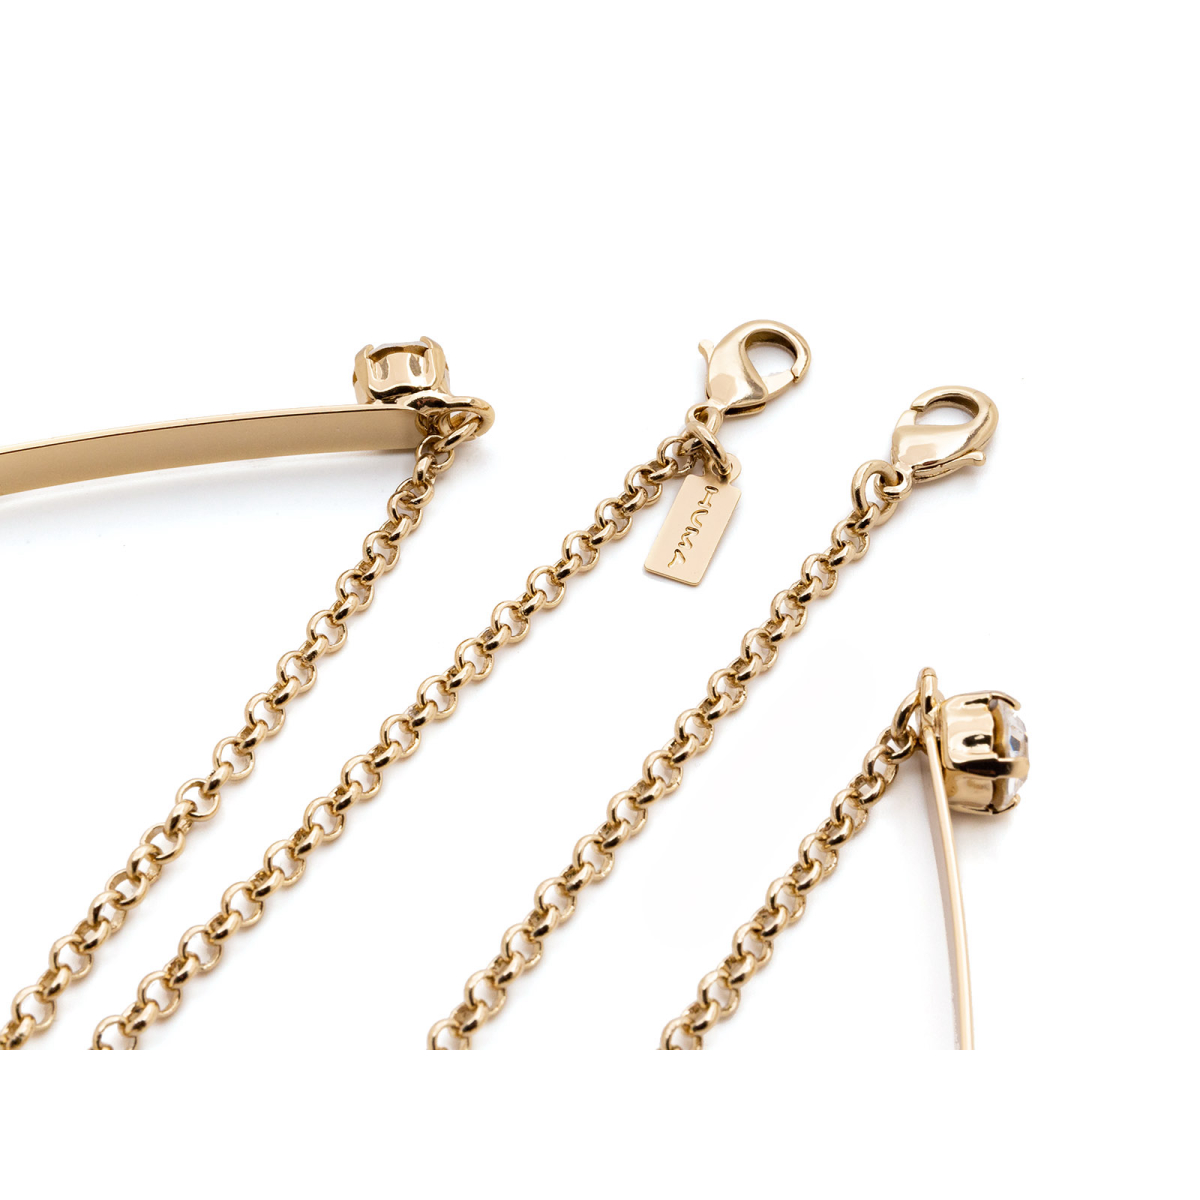 Huma® Accessories: Rigid Collar With Chain/swarovski color Gold P07 - 1/3.